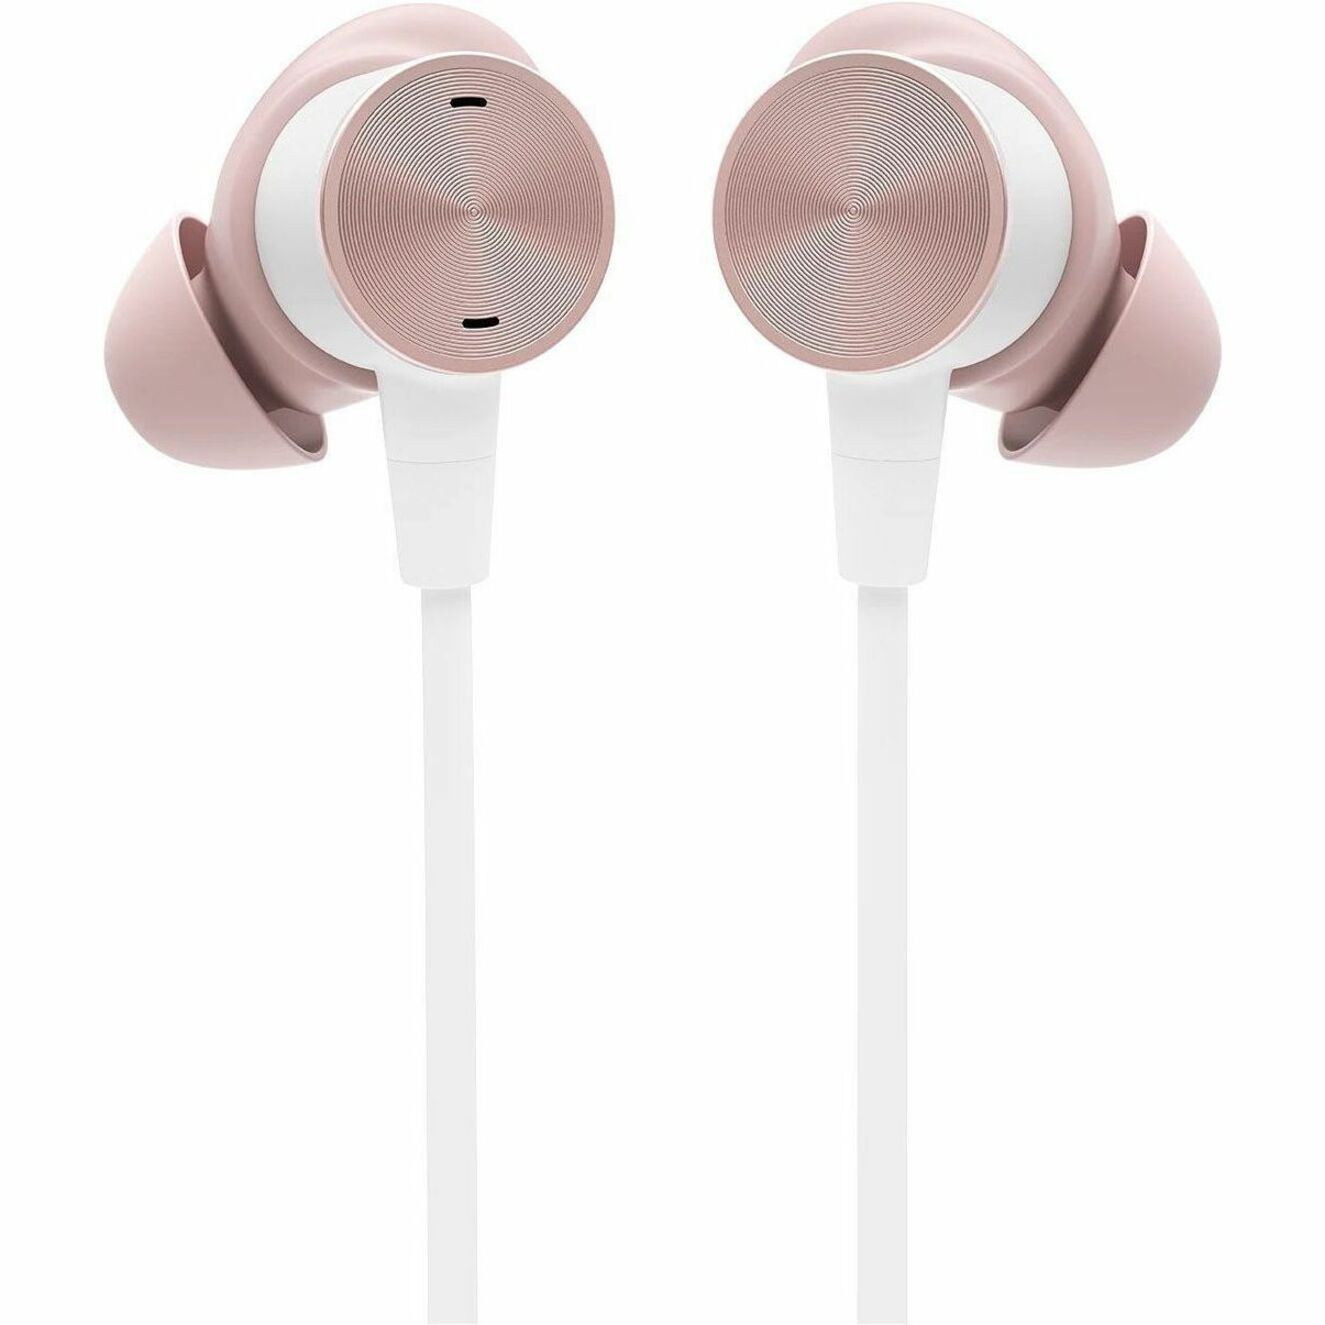 سماعات آذان موجهة بينورال من لوجيتك مزودة بميكروفون للتخفيف من الضوضاء، موصل USB-C، اللون الوردي